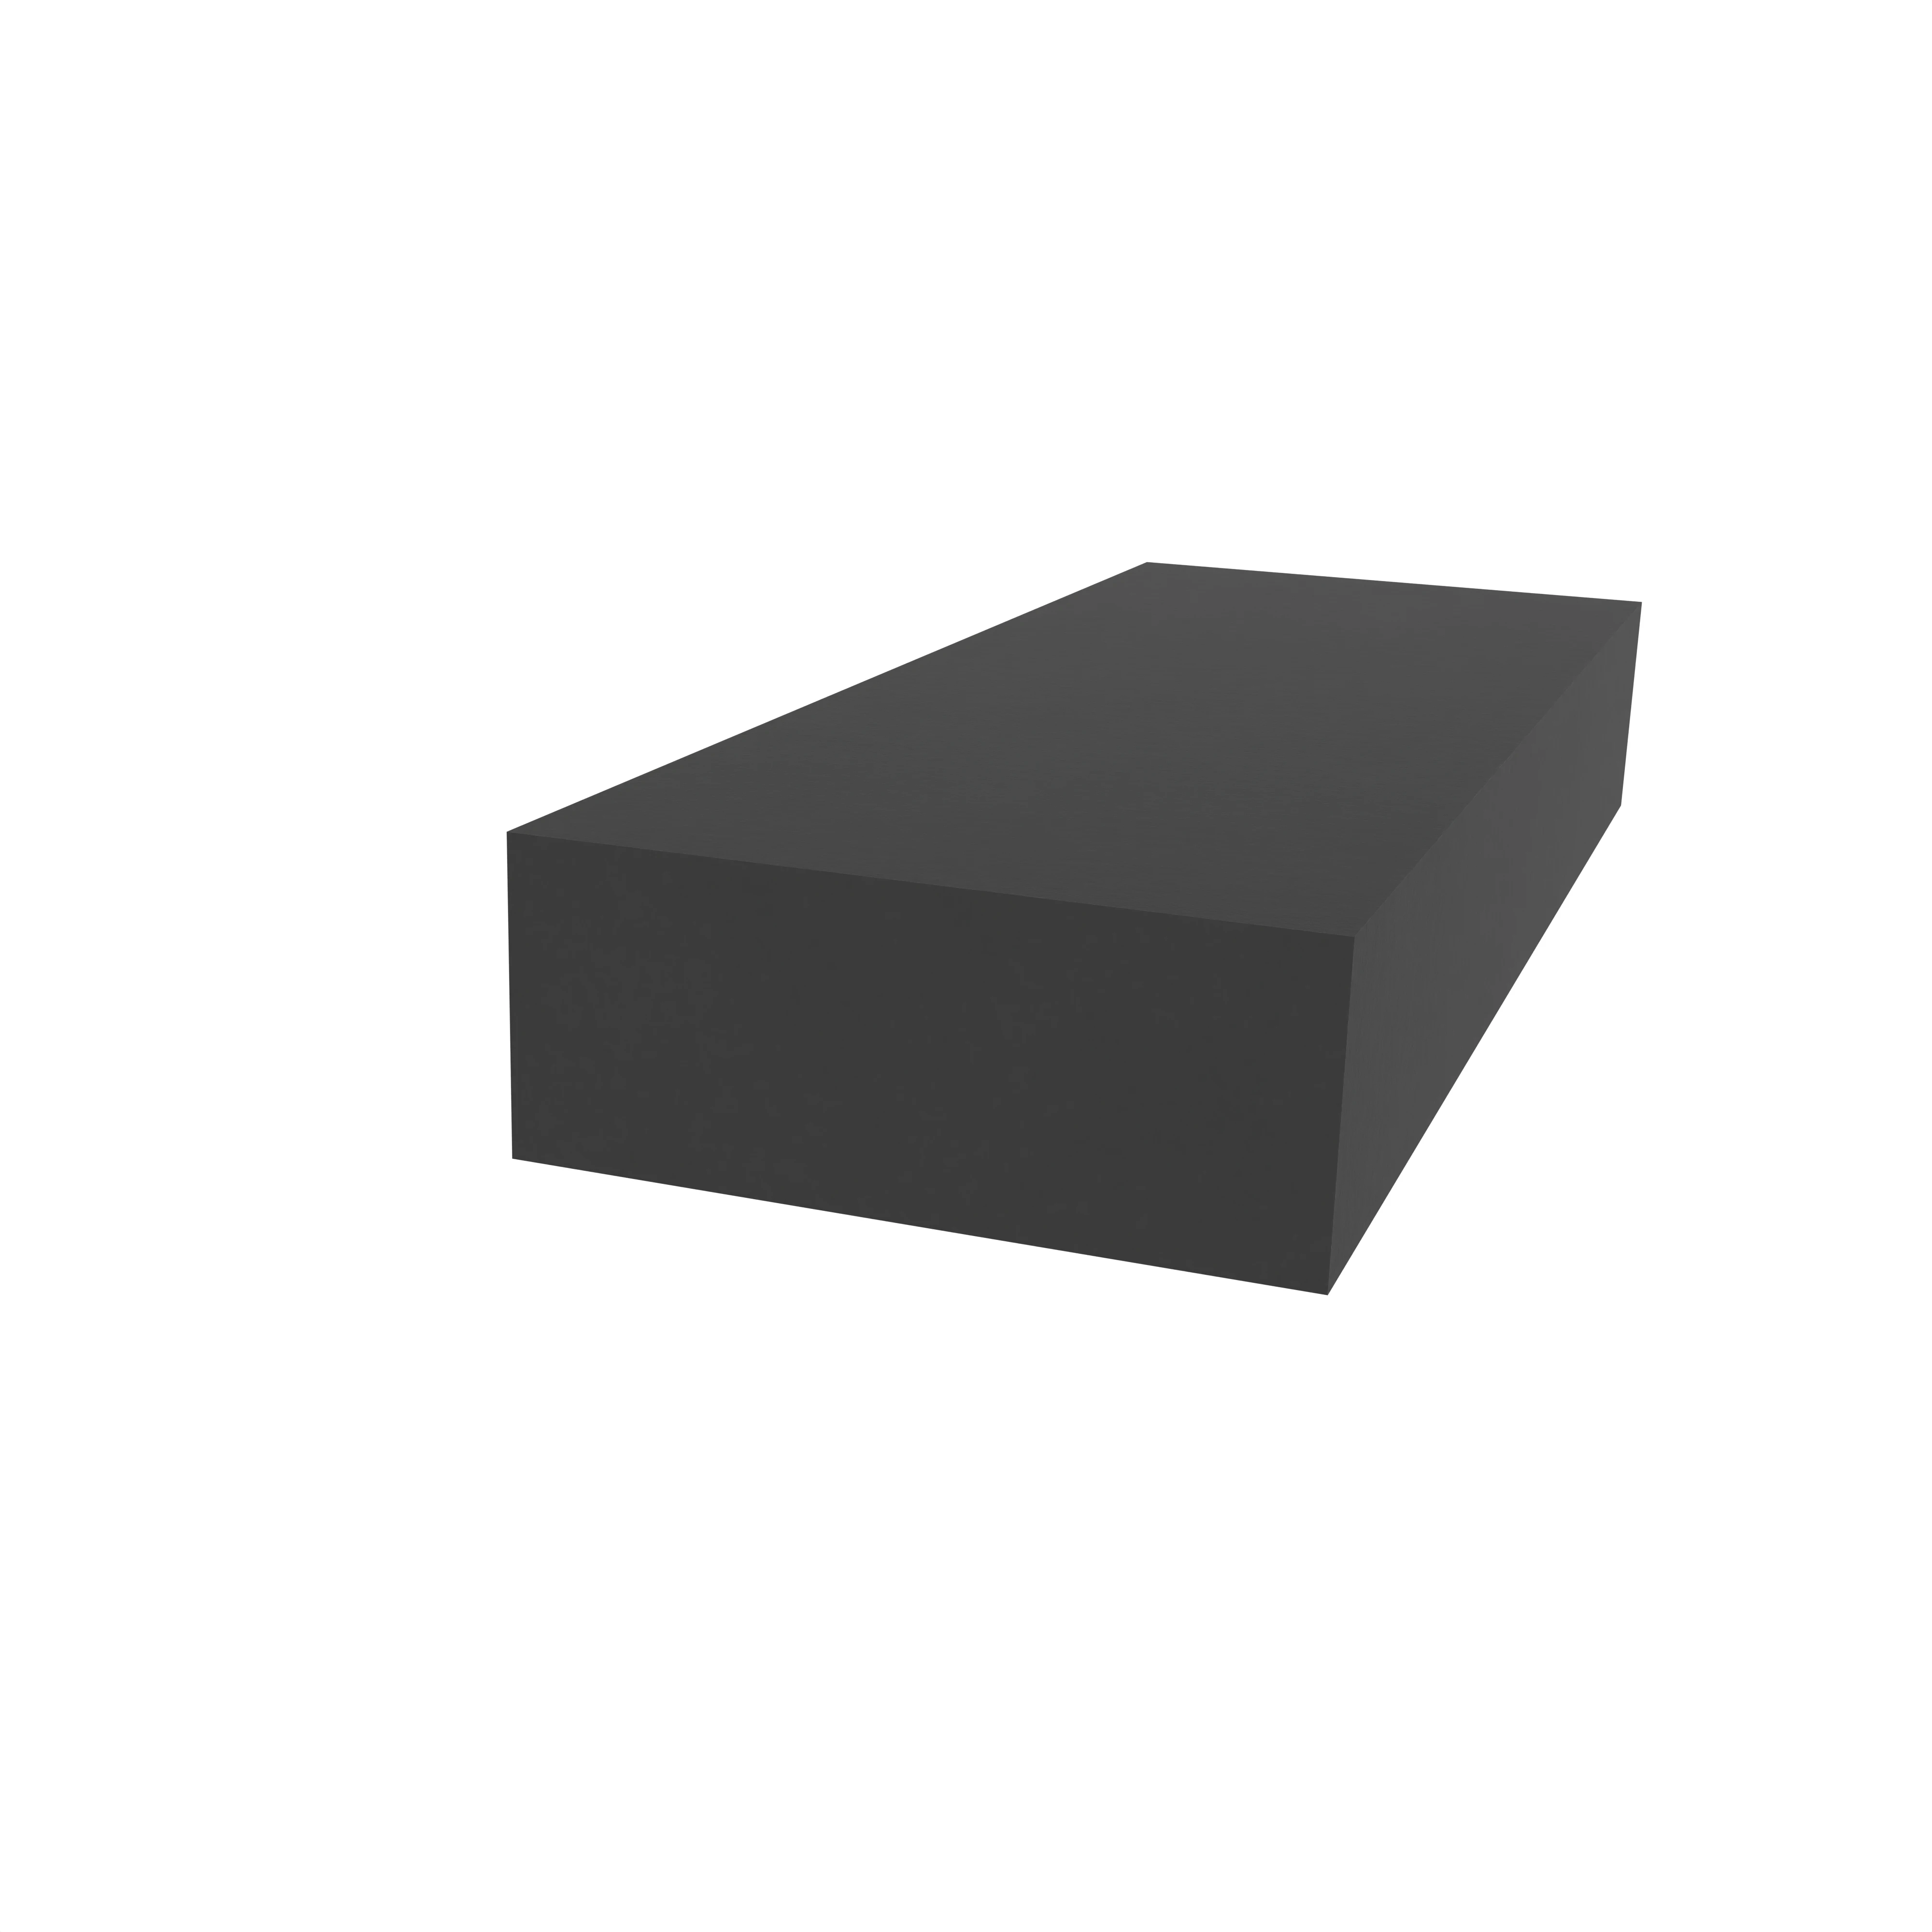 Moosgummidichtung vierkant | 15 mm Breite | Farbe: schwarz